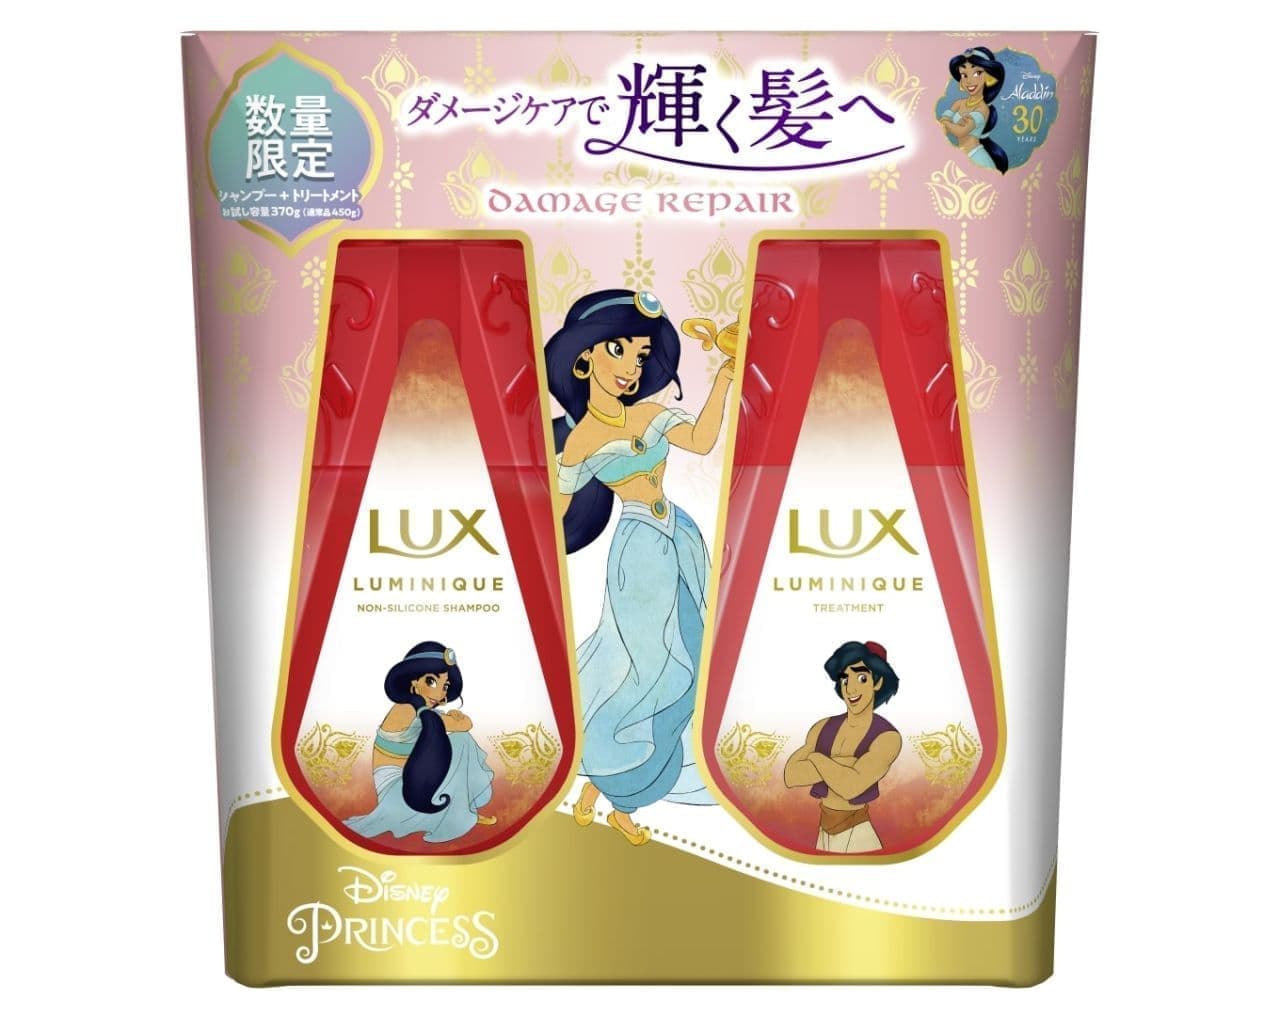 Lux Luminique DAMAGE REPAIR Aladdin Design Trial Volume Pump Pair